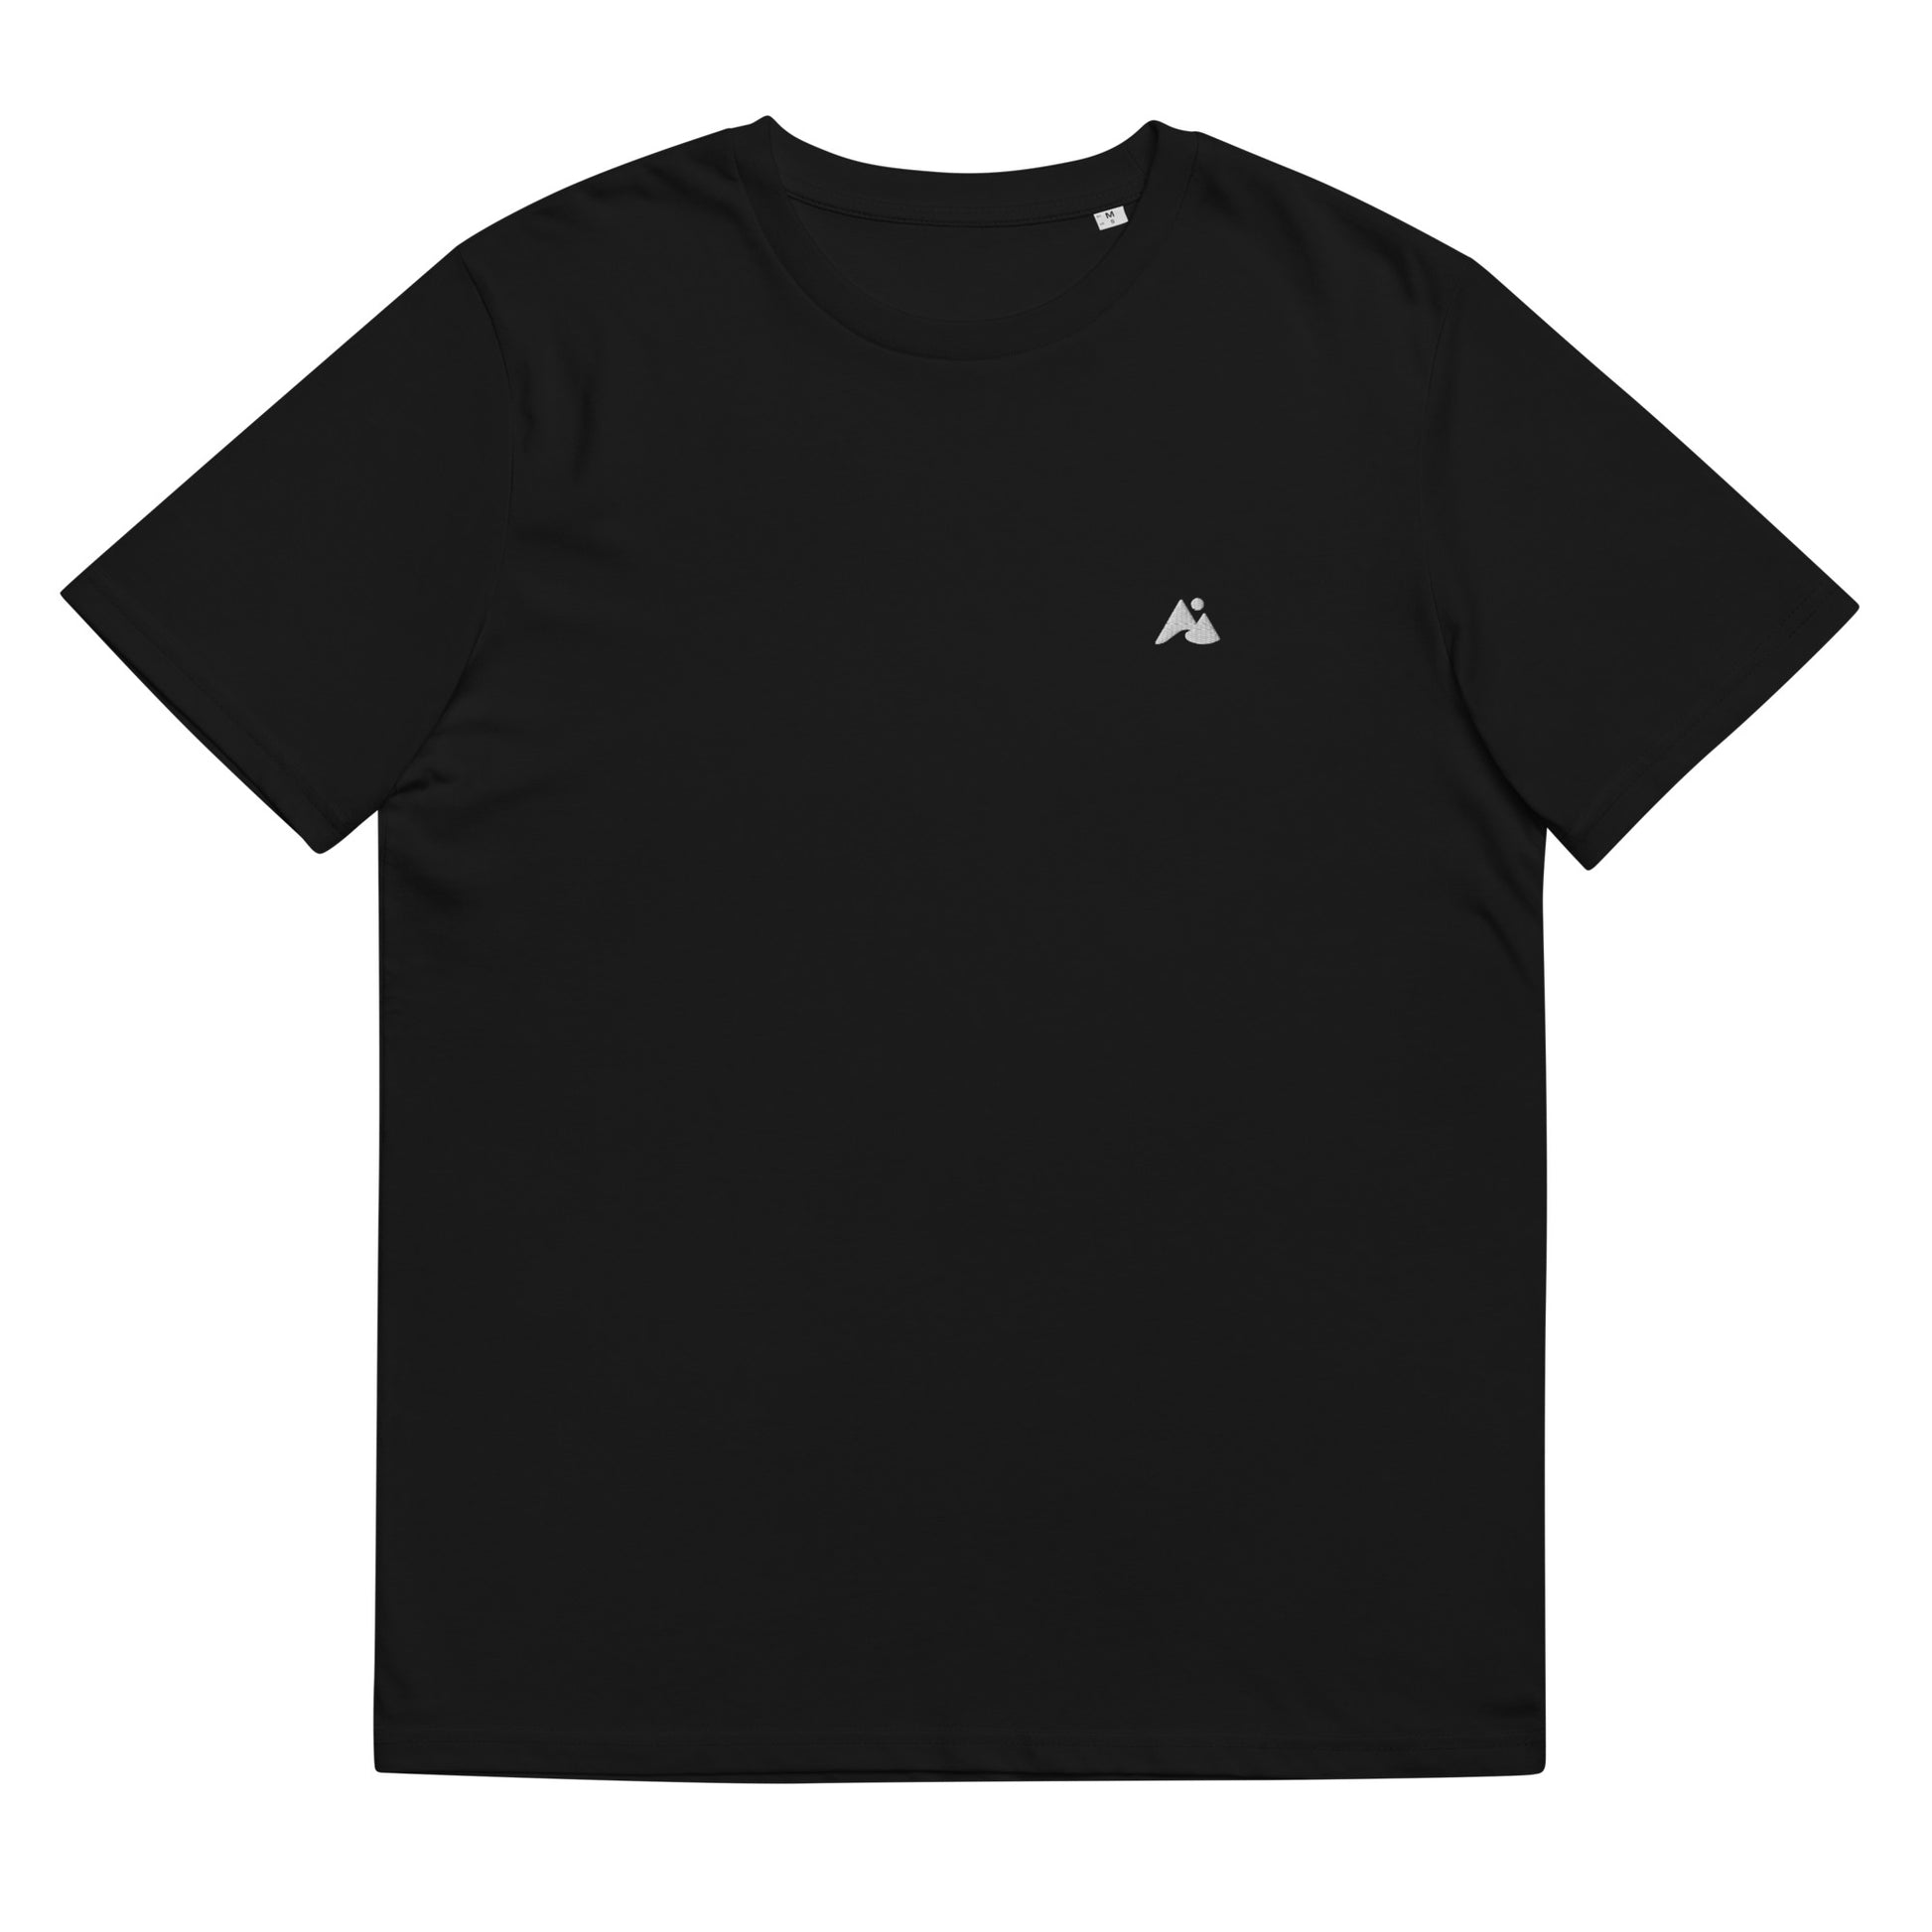 Il s'agit d'une image d'un t-shirt unisexe de couleur noire avec un logo en forme de montagne et de vague blanc sur la poitrine côté coeur. L'image est prise de face et le t-shirt est affiché sur un fond blanc.